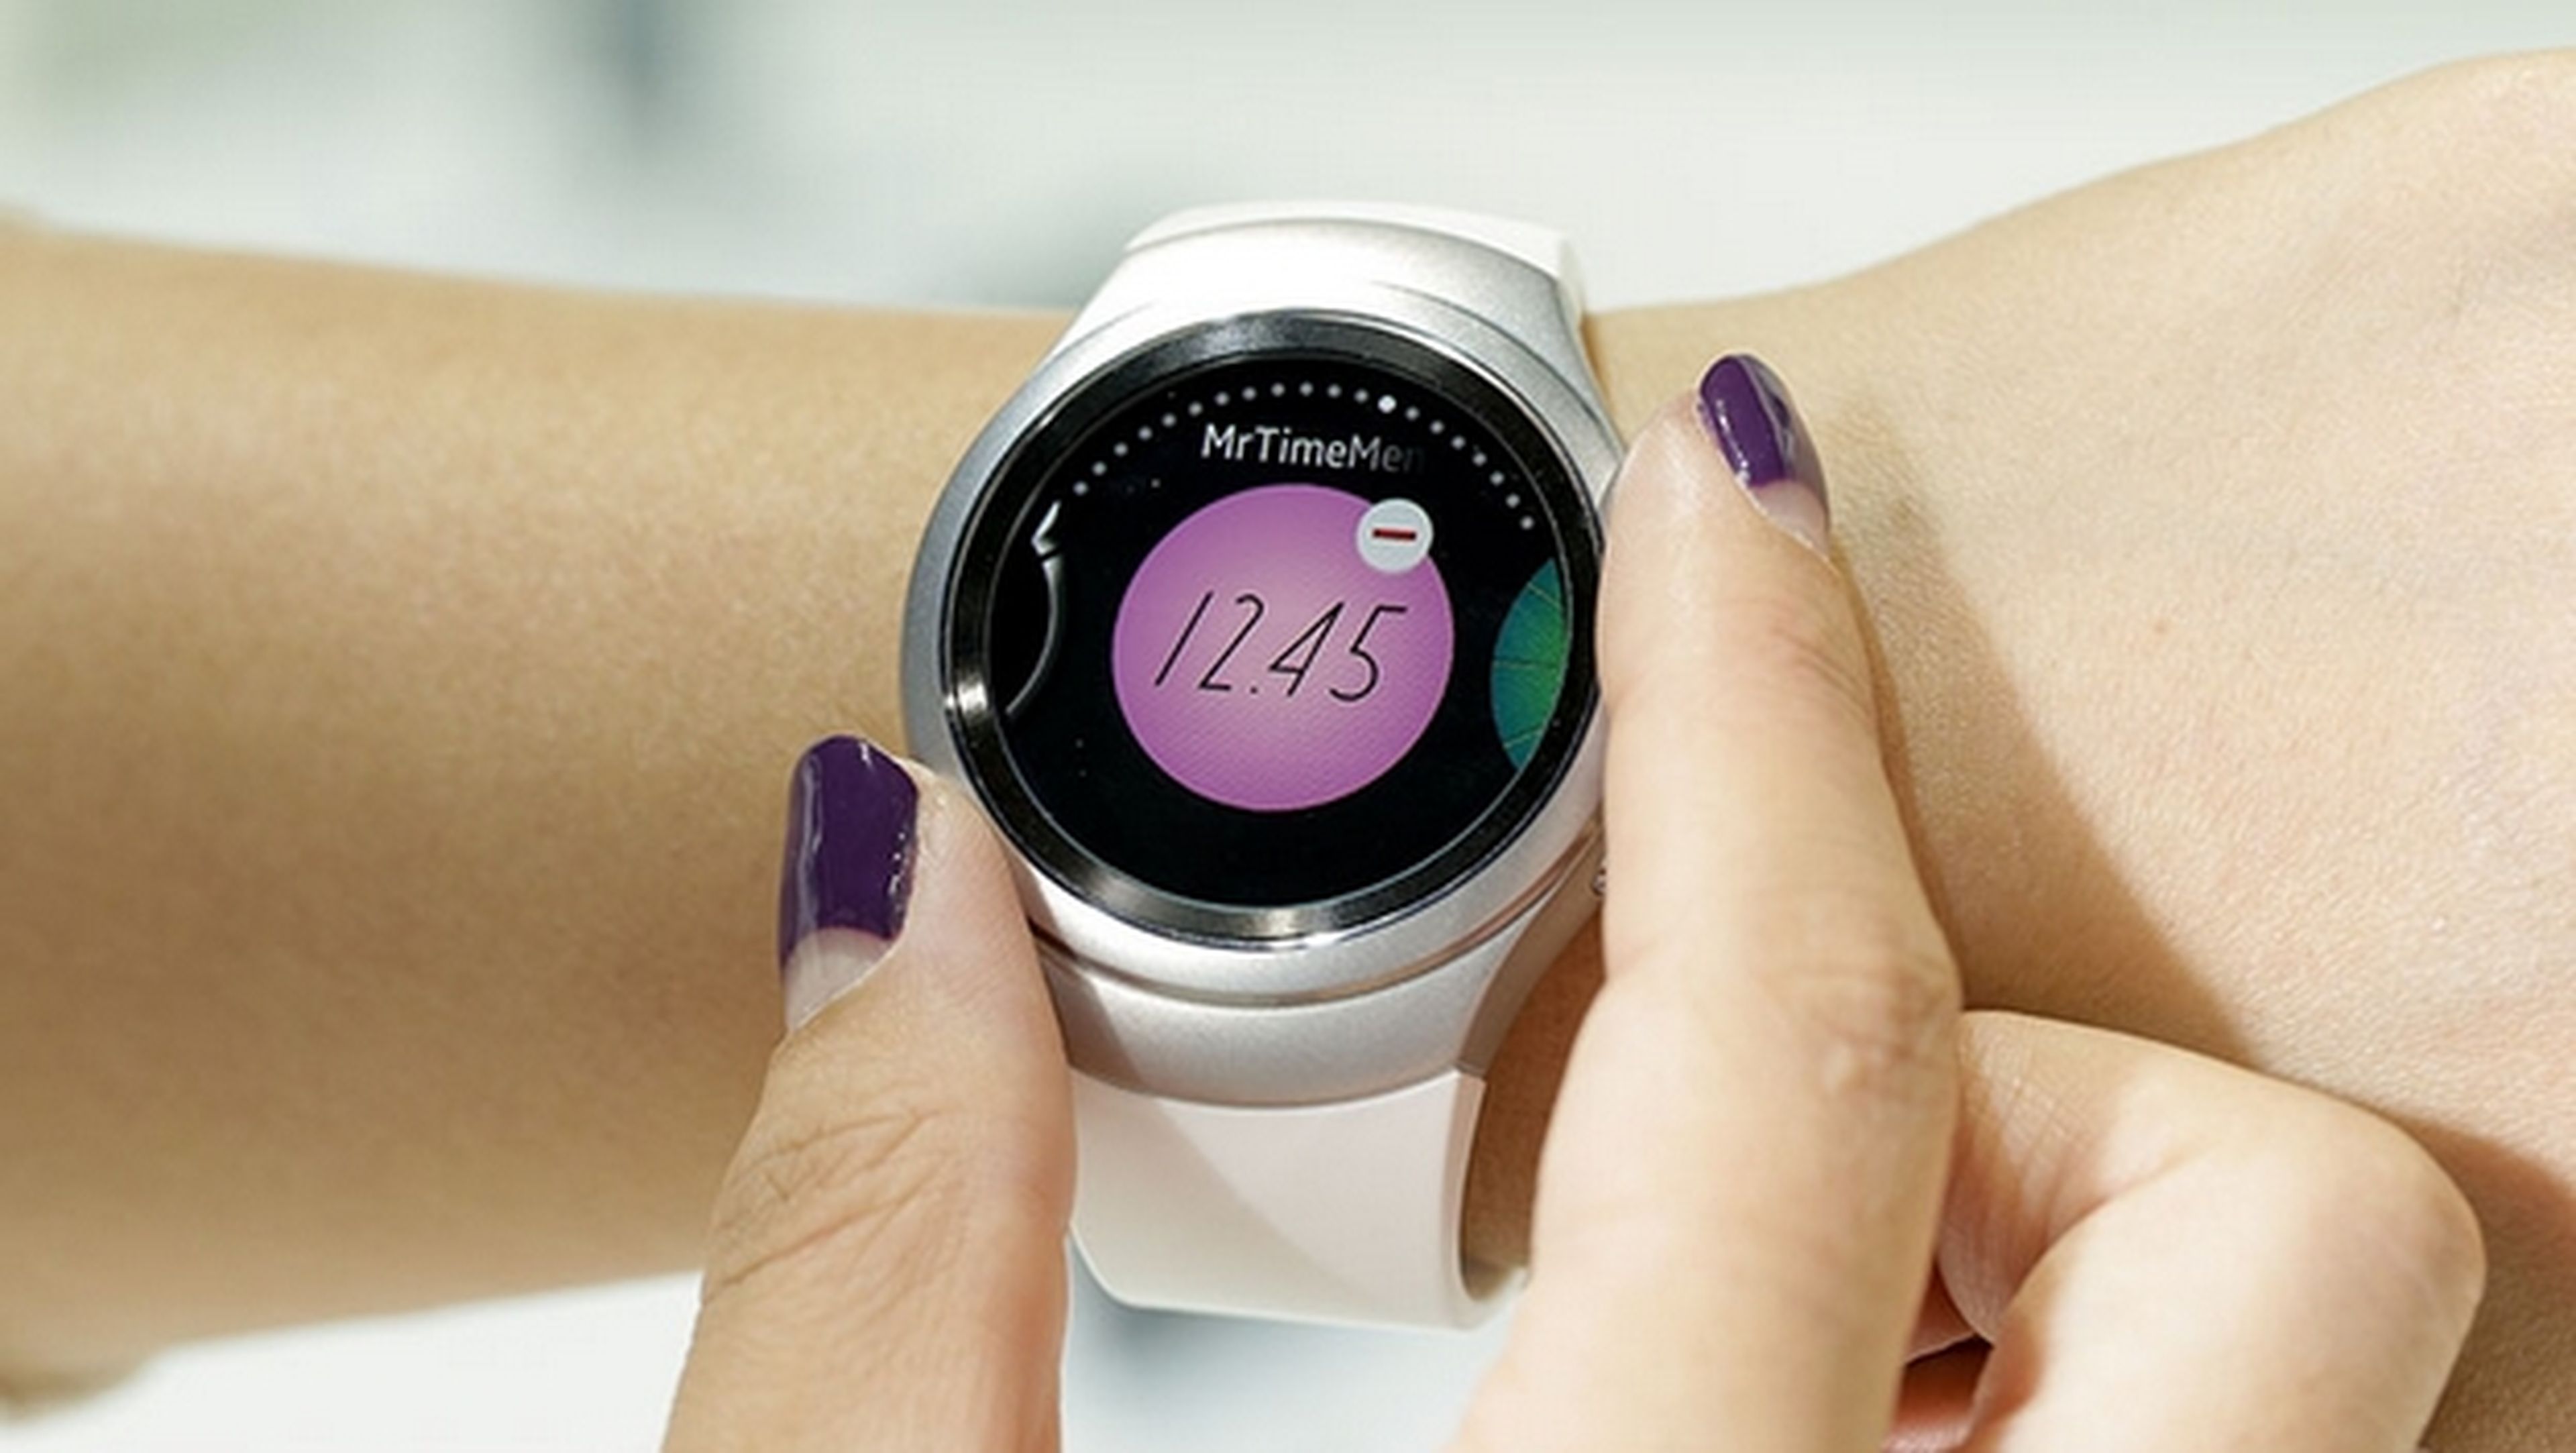 Concurso mordedura Percibir El smartwatch Samsung Gear S2 se maneja sin tocar la pantalla | Computer Hoy